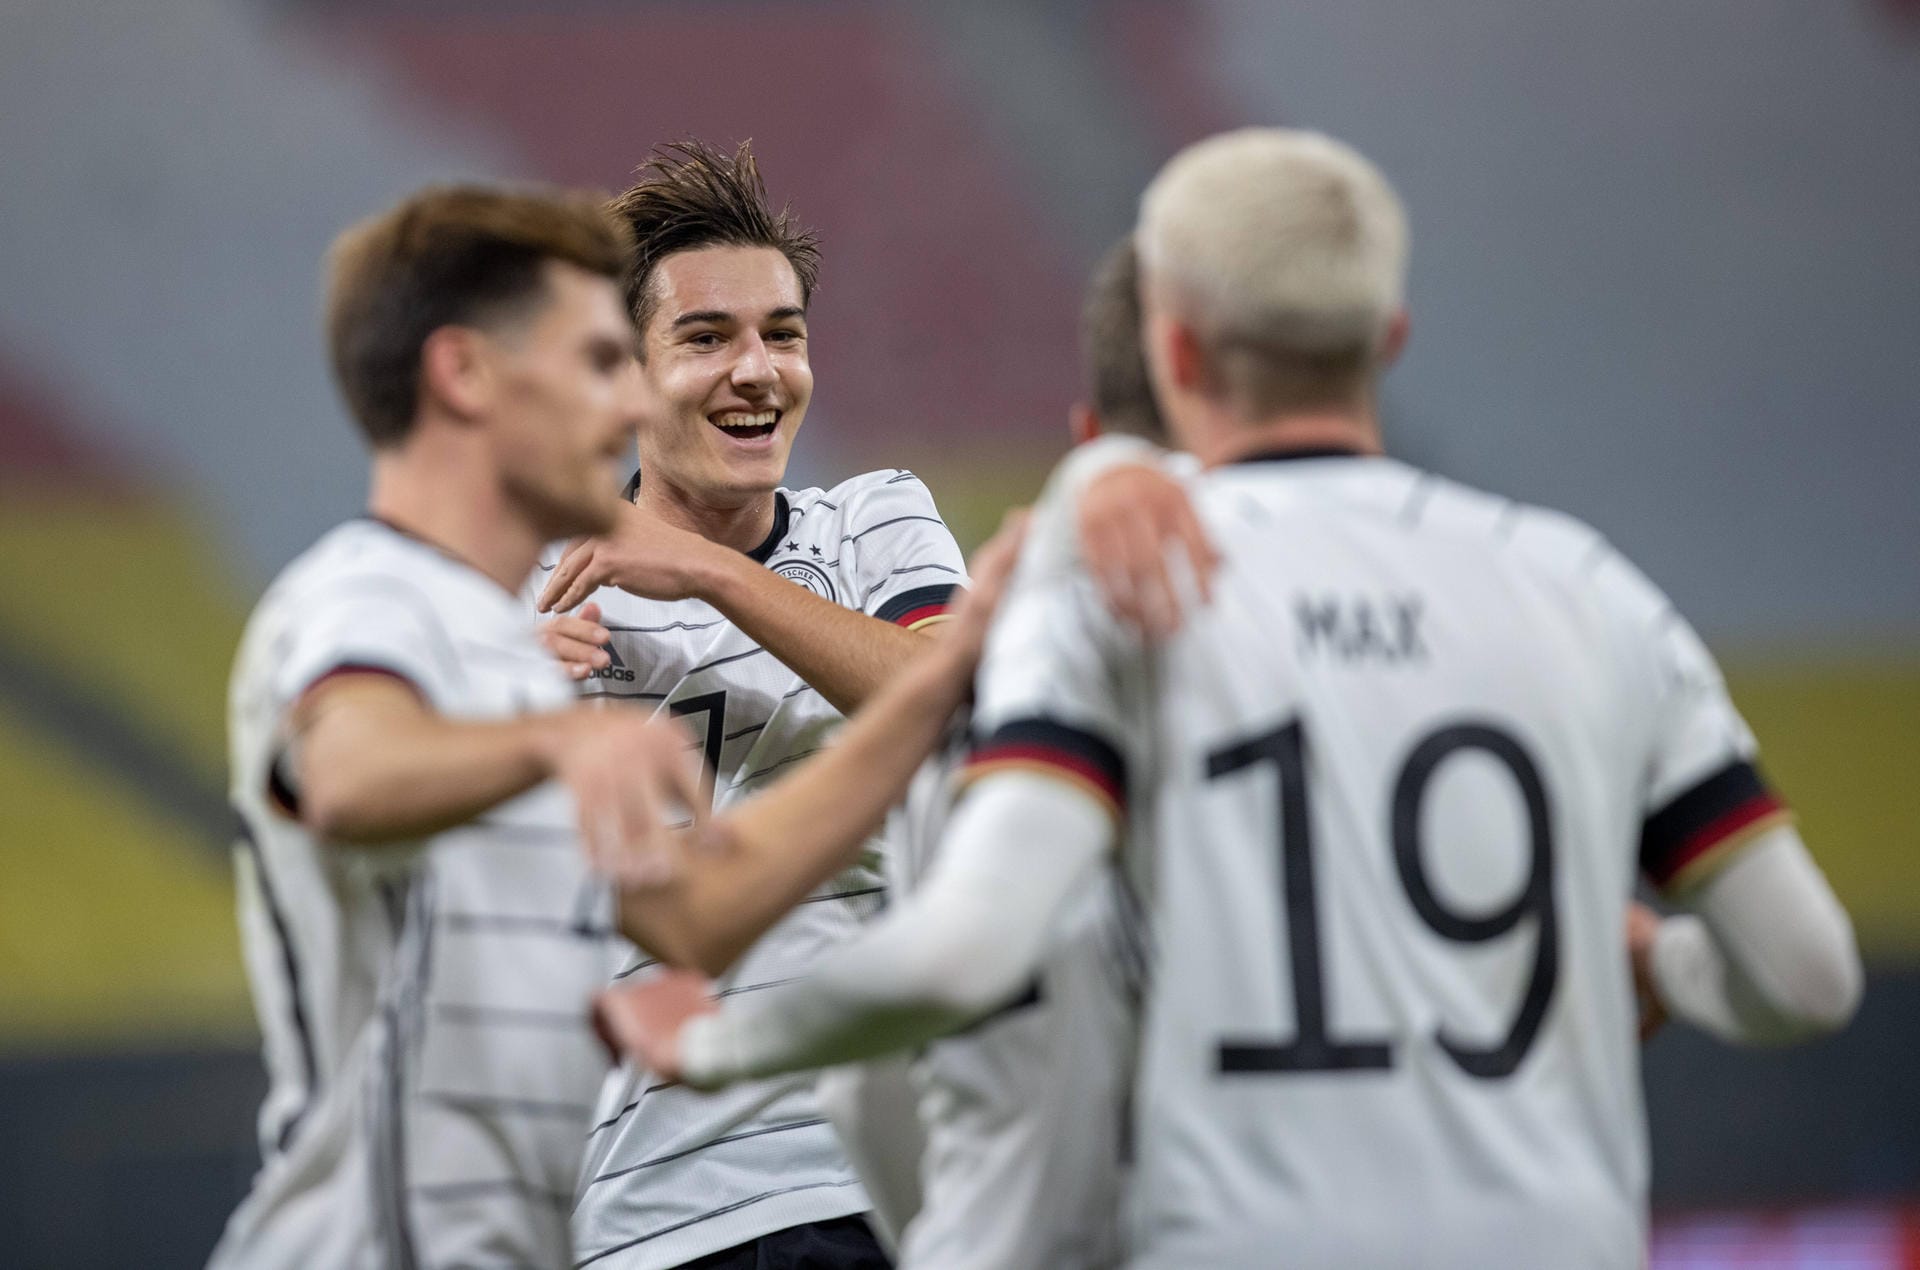 Die DFB-Elf hat das Testspiel gegen Tschechien für sich entschieden. Das Team von Bundestrainer Joachim Löw siegte in Leipzig mit 1:0. Den entscheidenden Treffer erzielte Stürmer Luca Waldschmidt (13. Minute). Wie sich die Spieler ansonsten geschlagen haben, erfahren Sie in unserer Einzelkritik.